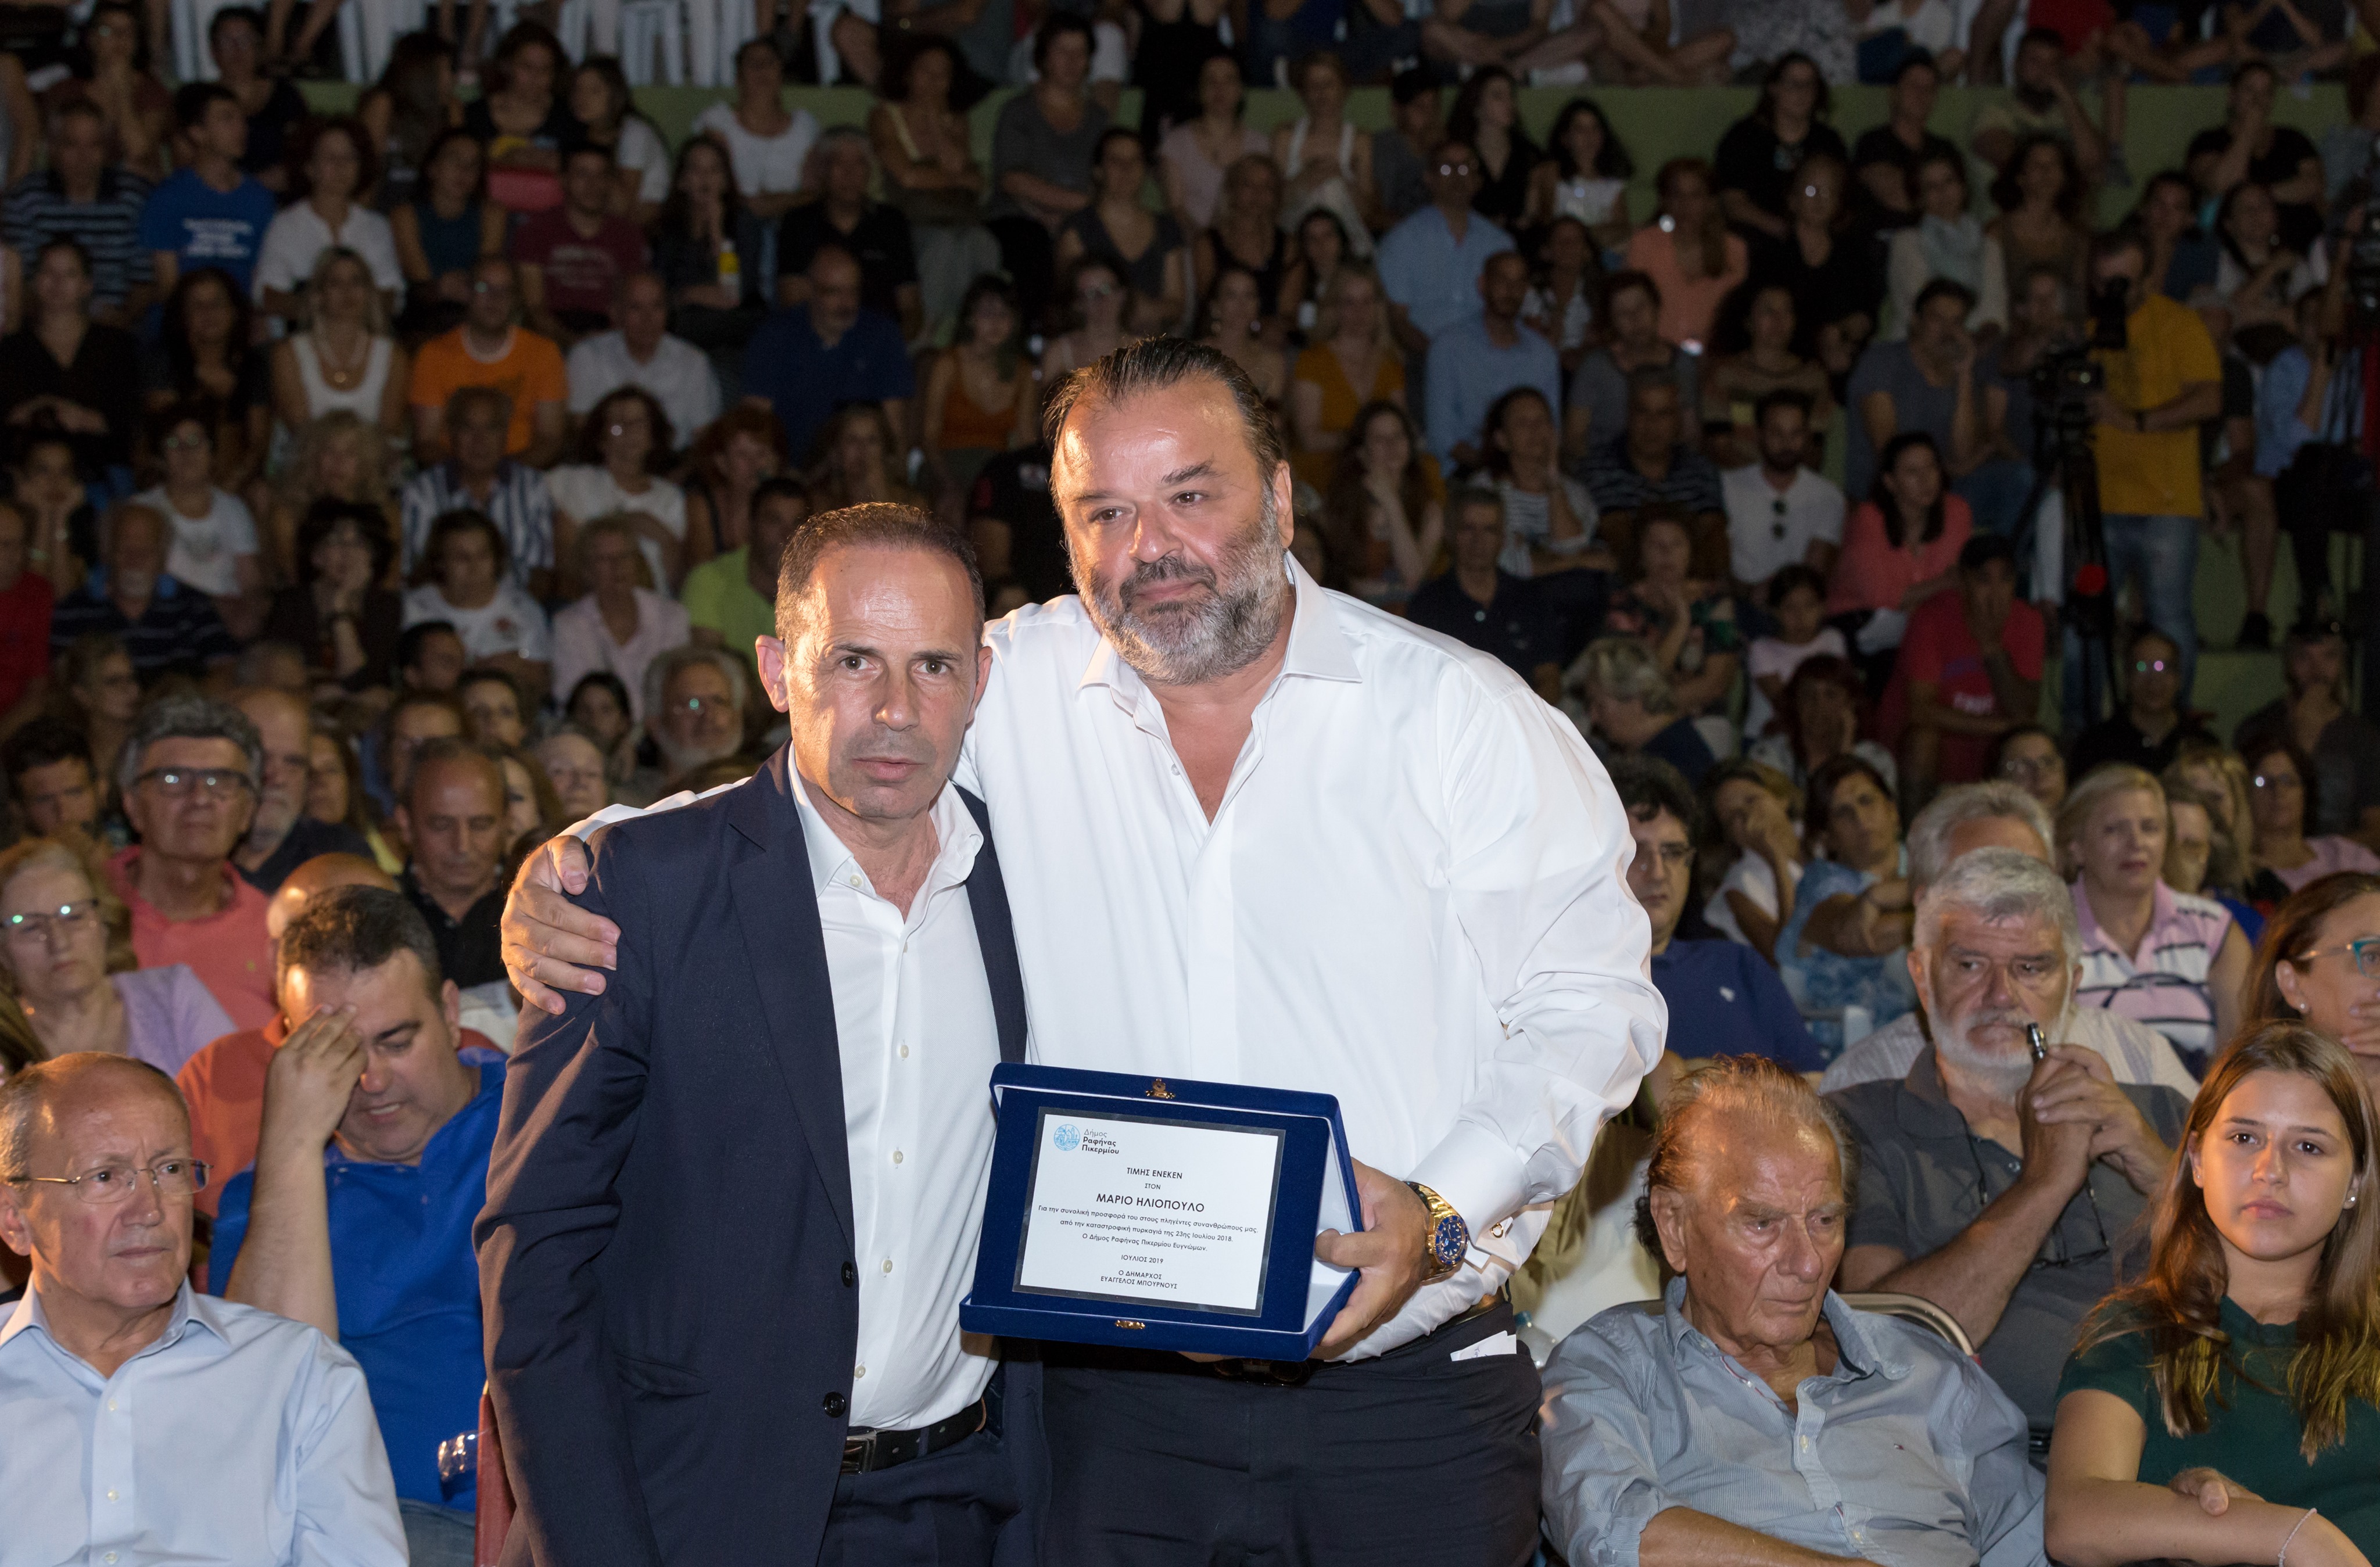 Για την προσφορά του στους πληγέντες στο Μάτι βραβεύτηκε ο Μάριος Ηλιόπουλος